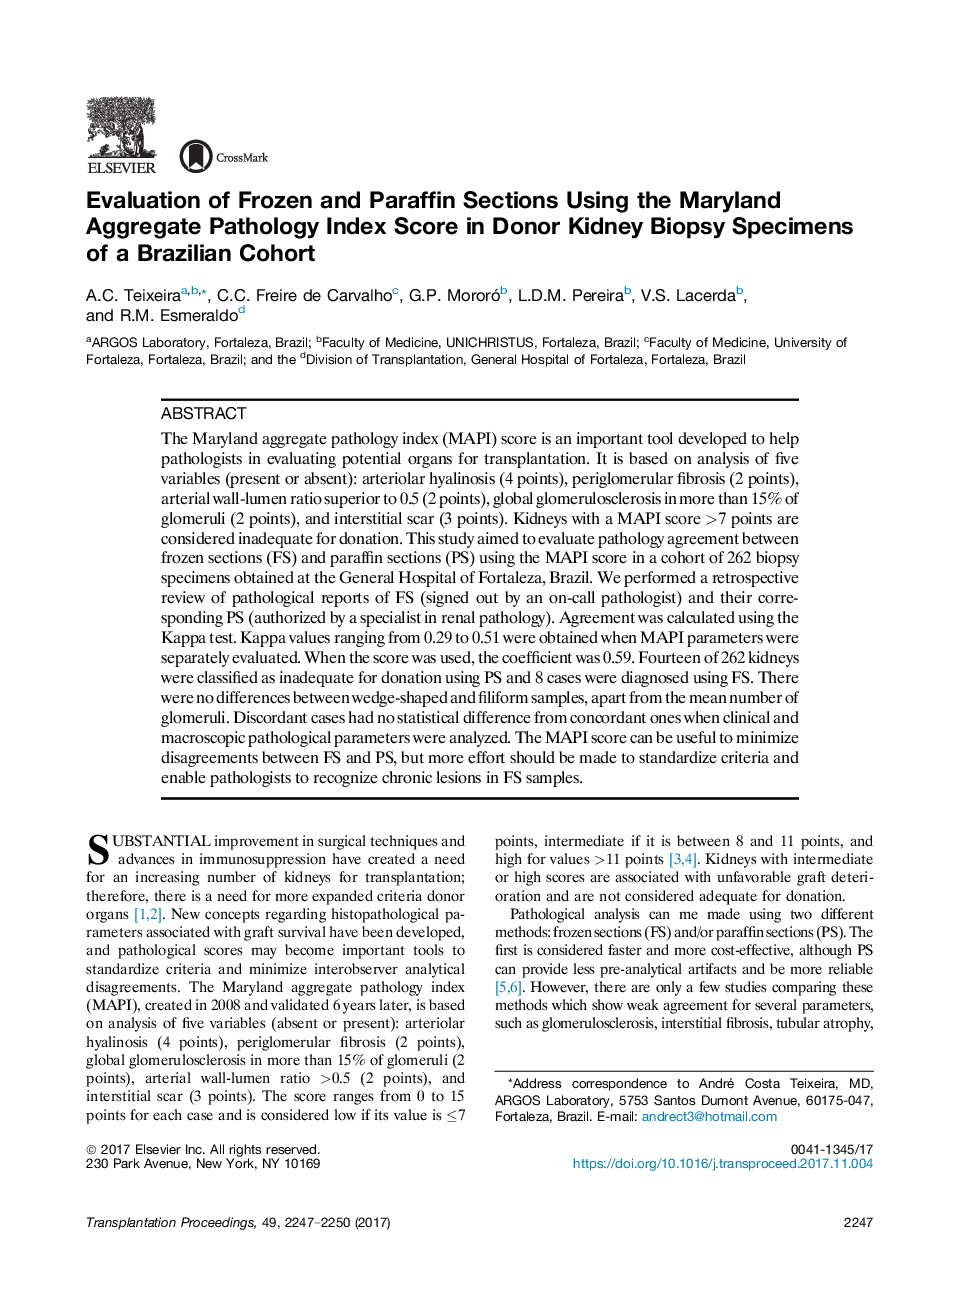 ارزیابی بخش های یخ زده و پارافین با استفاده از شاخص پاتولوژی مولکولی مریلند در نمونه های بیوپسی کلیوی دونر یک گروه همجنس گرای برزیلی 